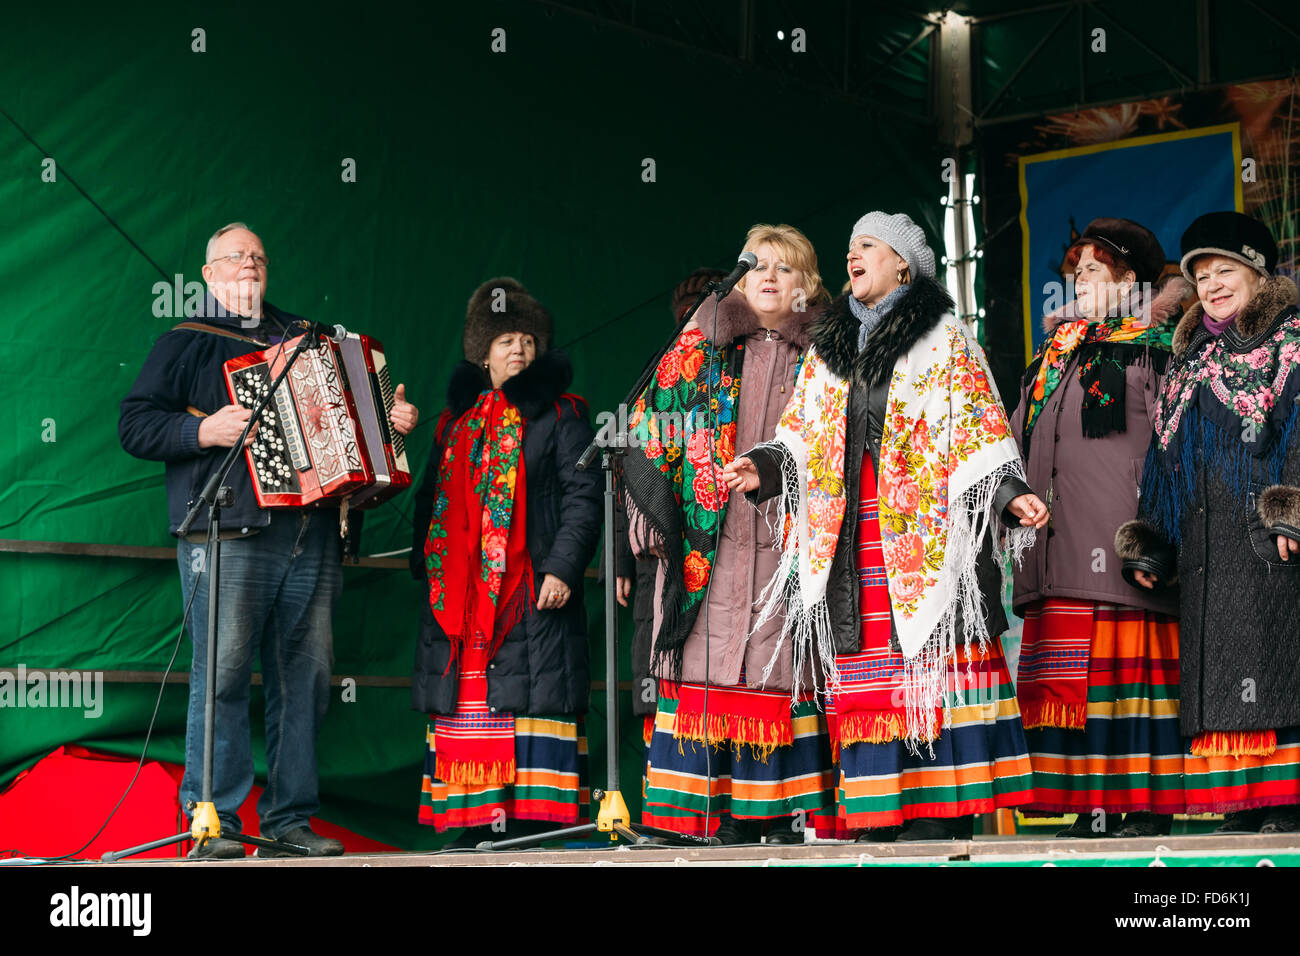 Unbekannte Frauengruppe in nationale Kleidung zur Feier der Masleniza - traditionellen russischen Feiertag - Fastnacht Stockfoto